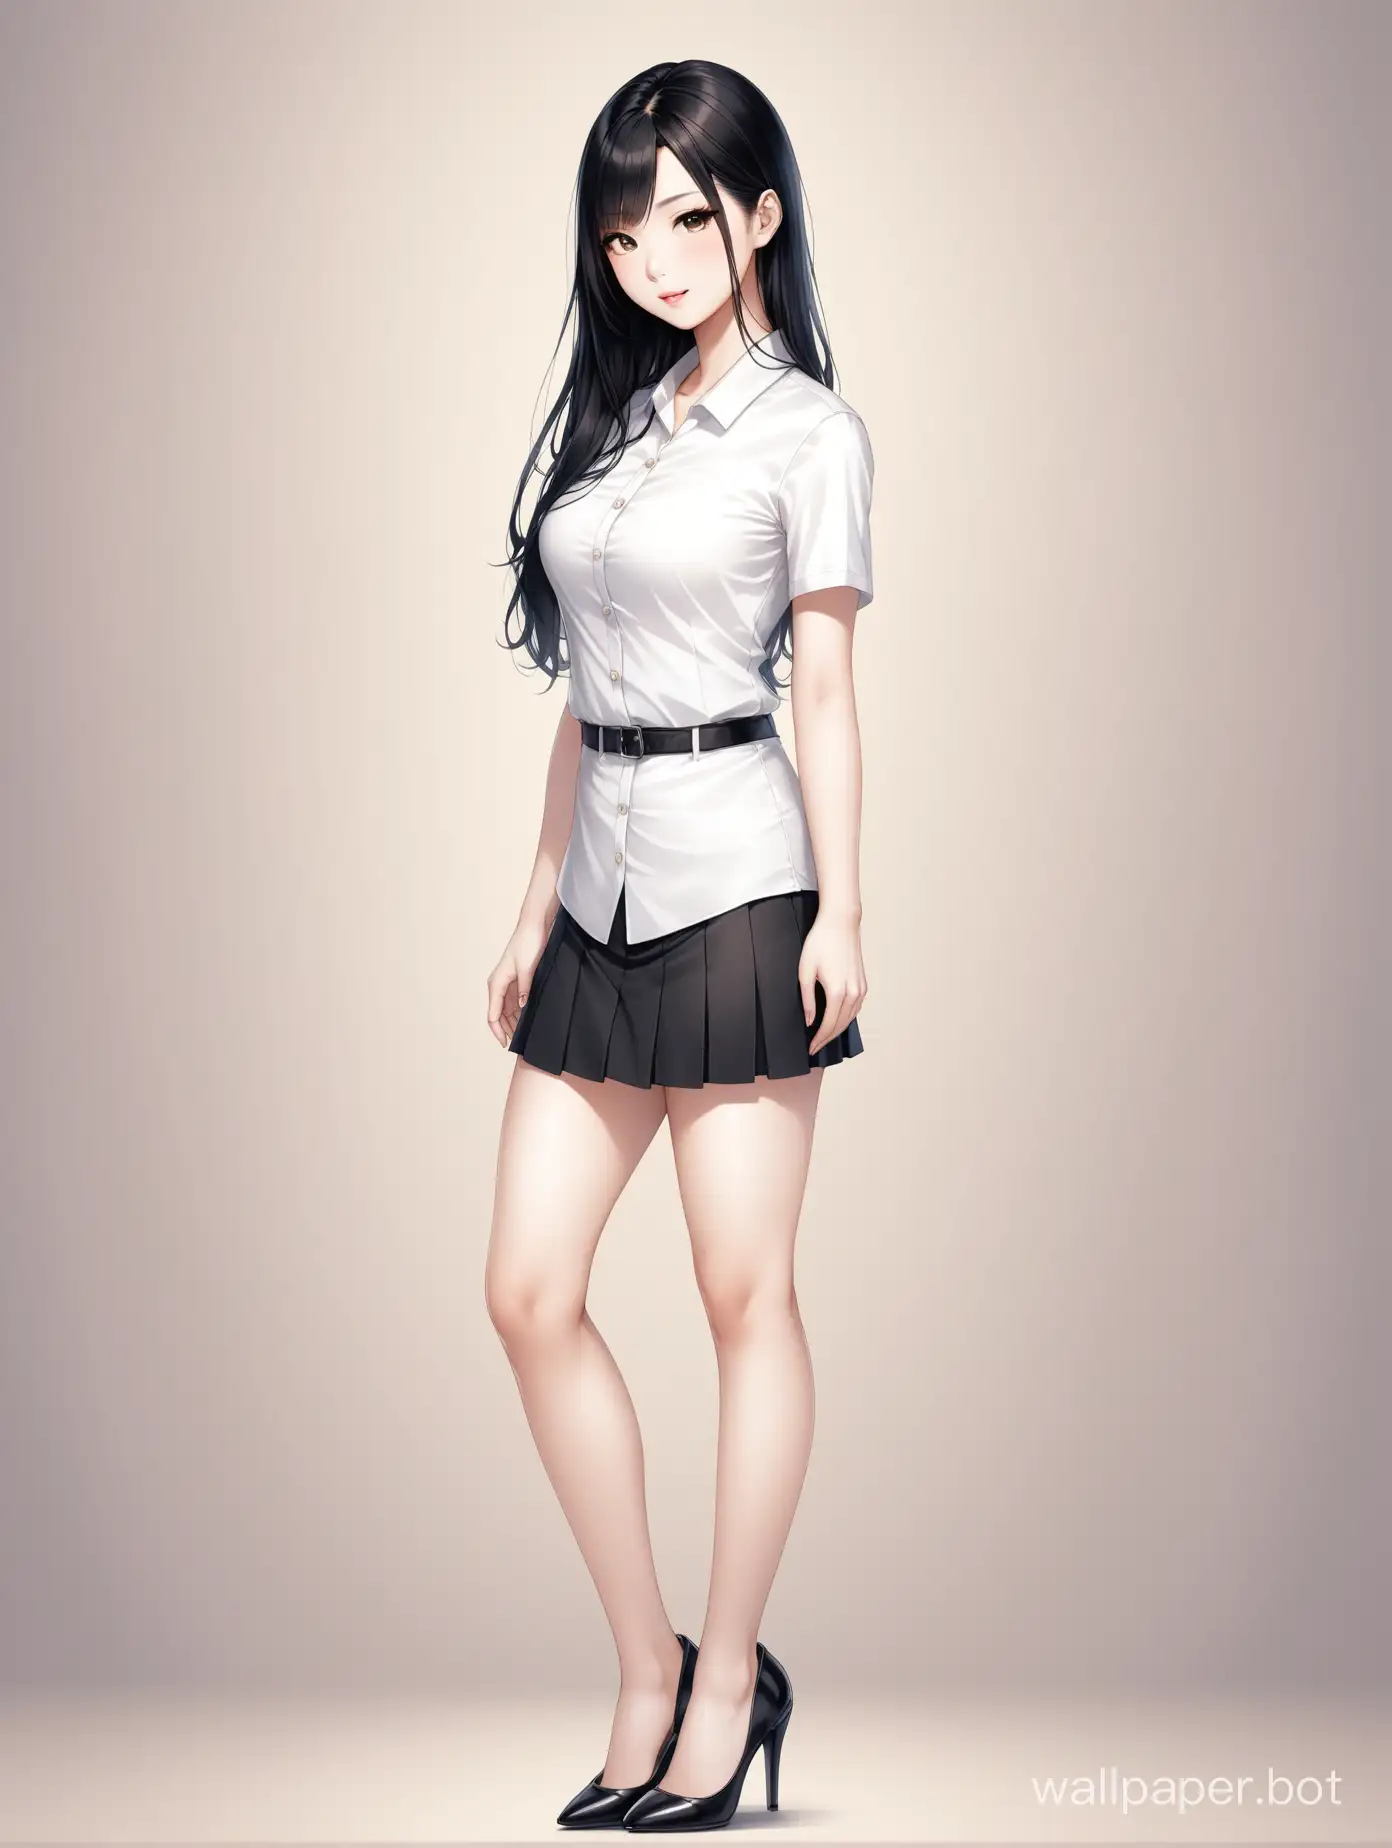 High detail asian female photo. Long black hair.white skins. Full body standing. Soft filter. Pump heels. Low waist short skirt.